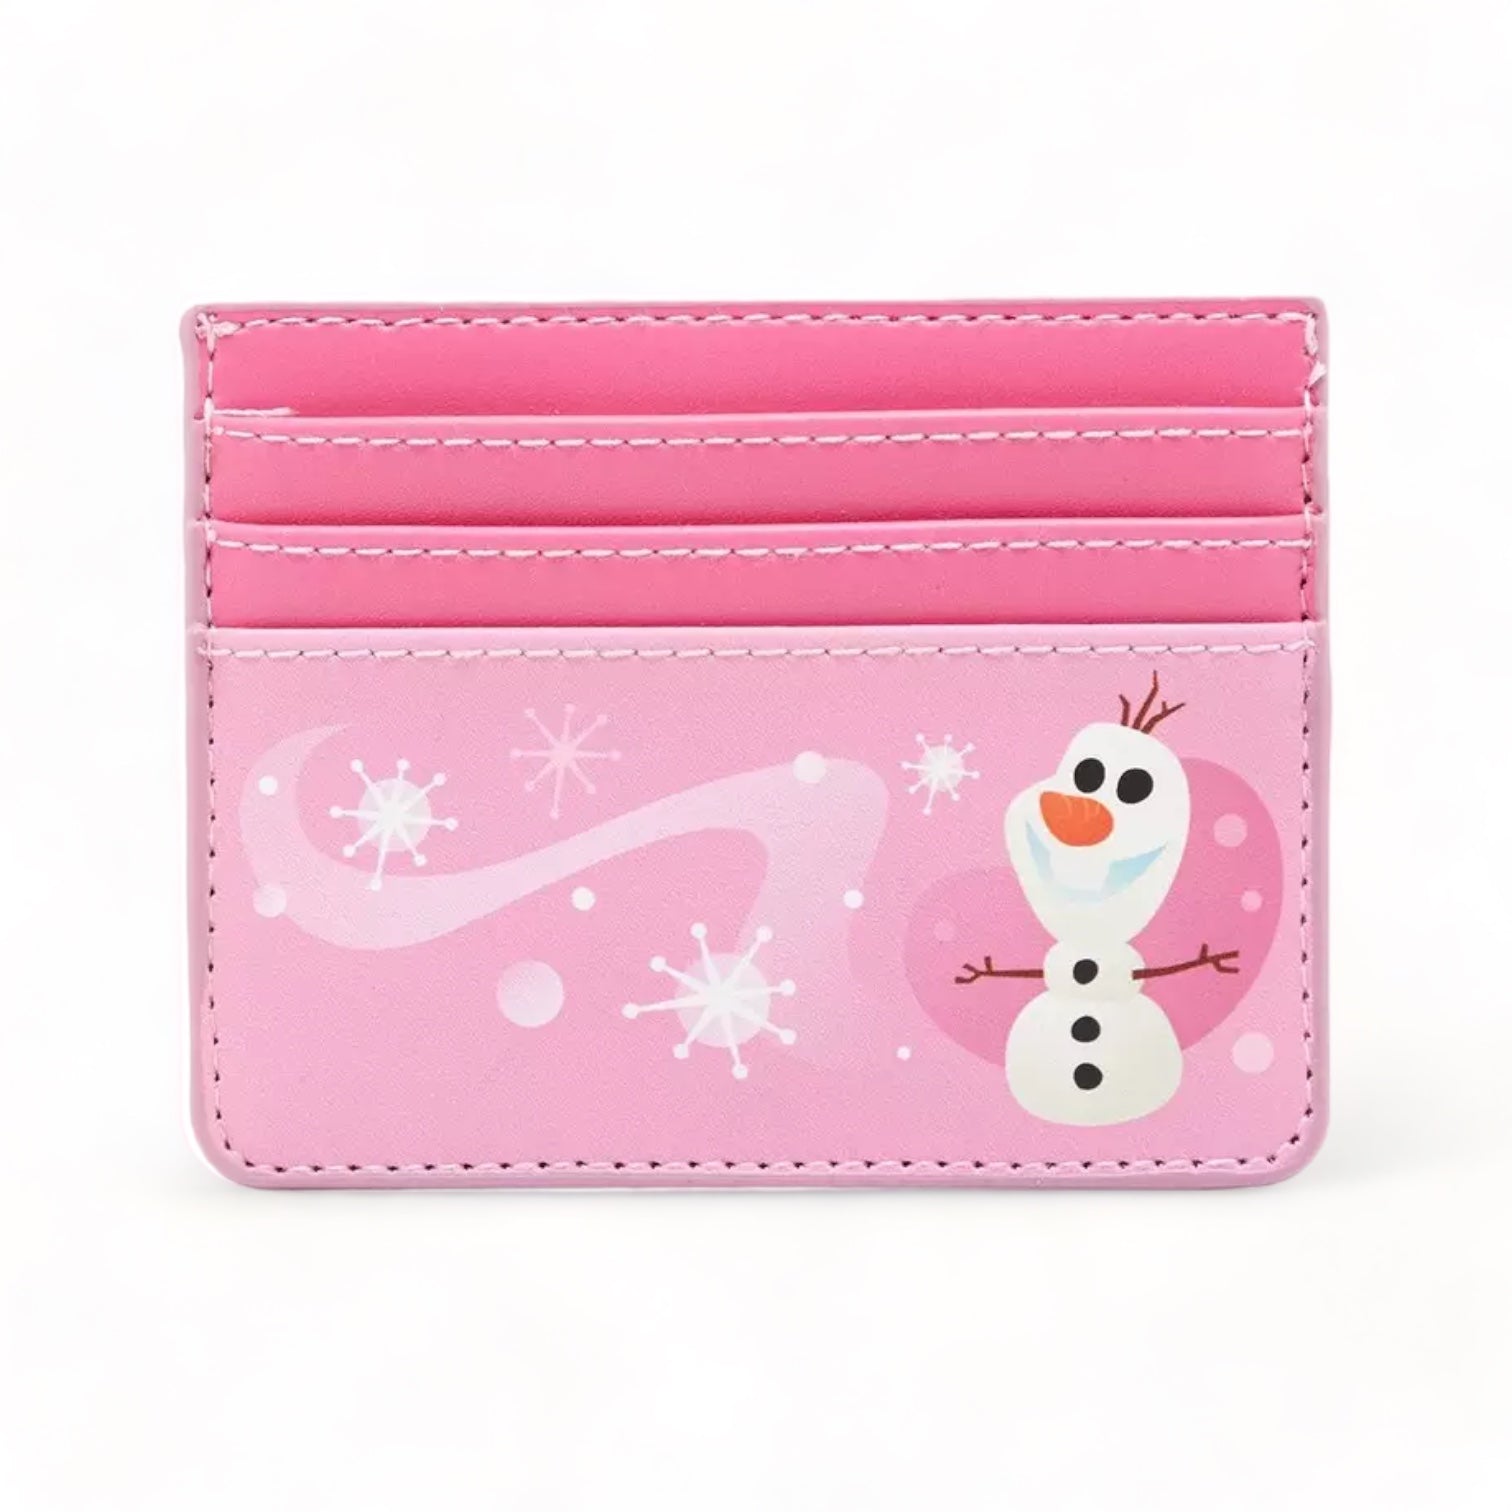 Loungefly Disney Frozen Elsa Reversible Sequin Zip Around Wallet